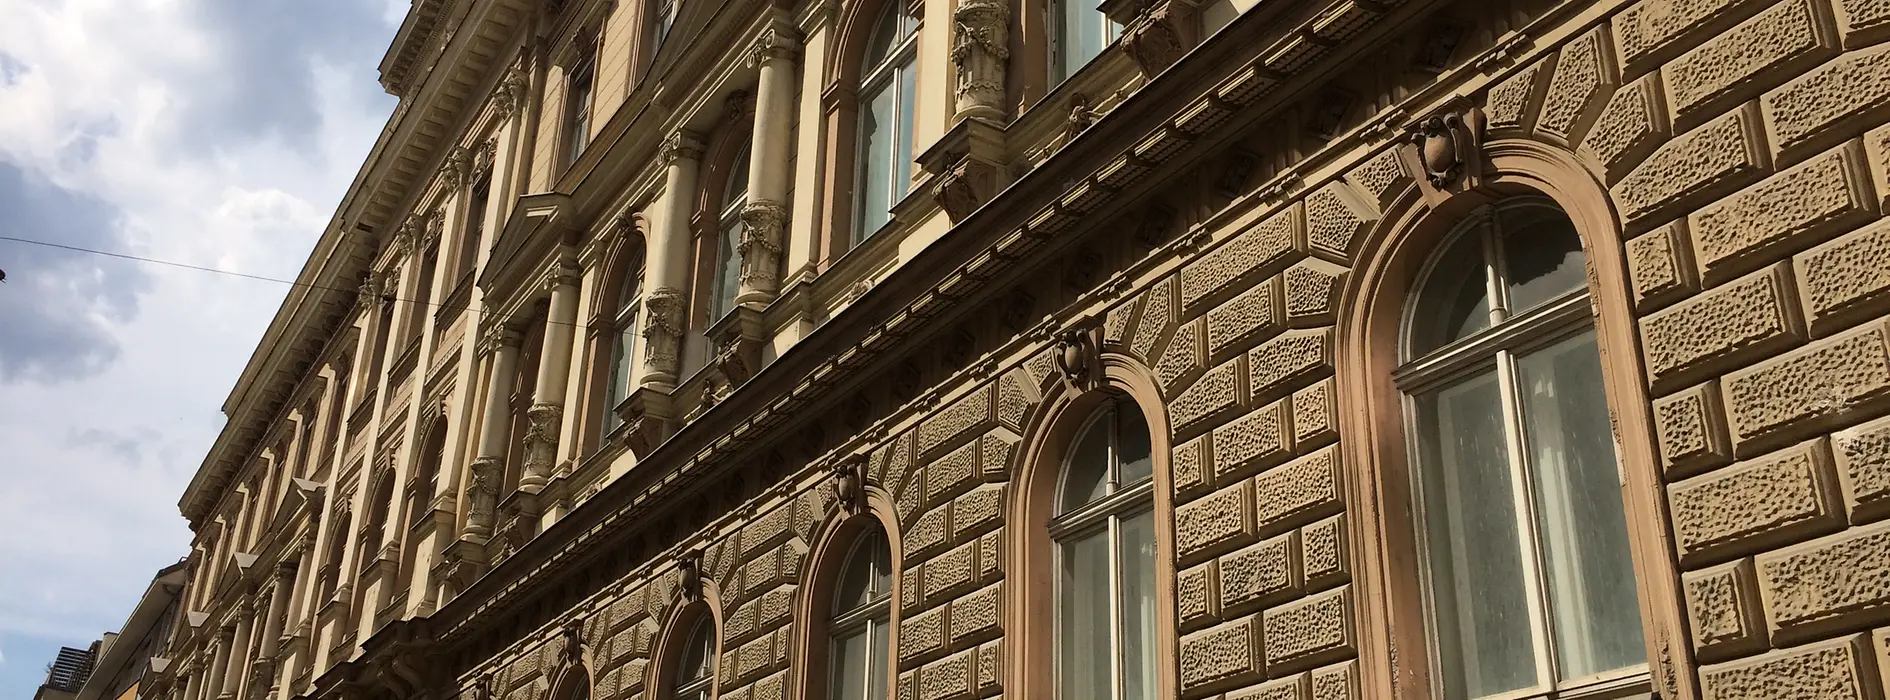 Außenansicht eines Gebäudes